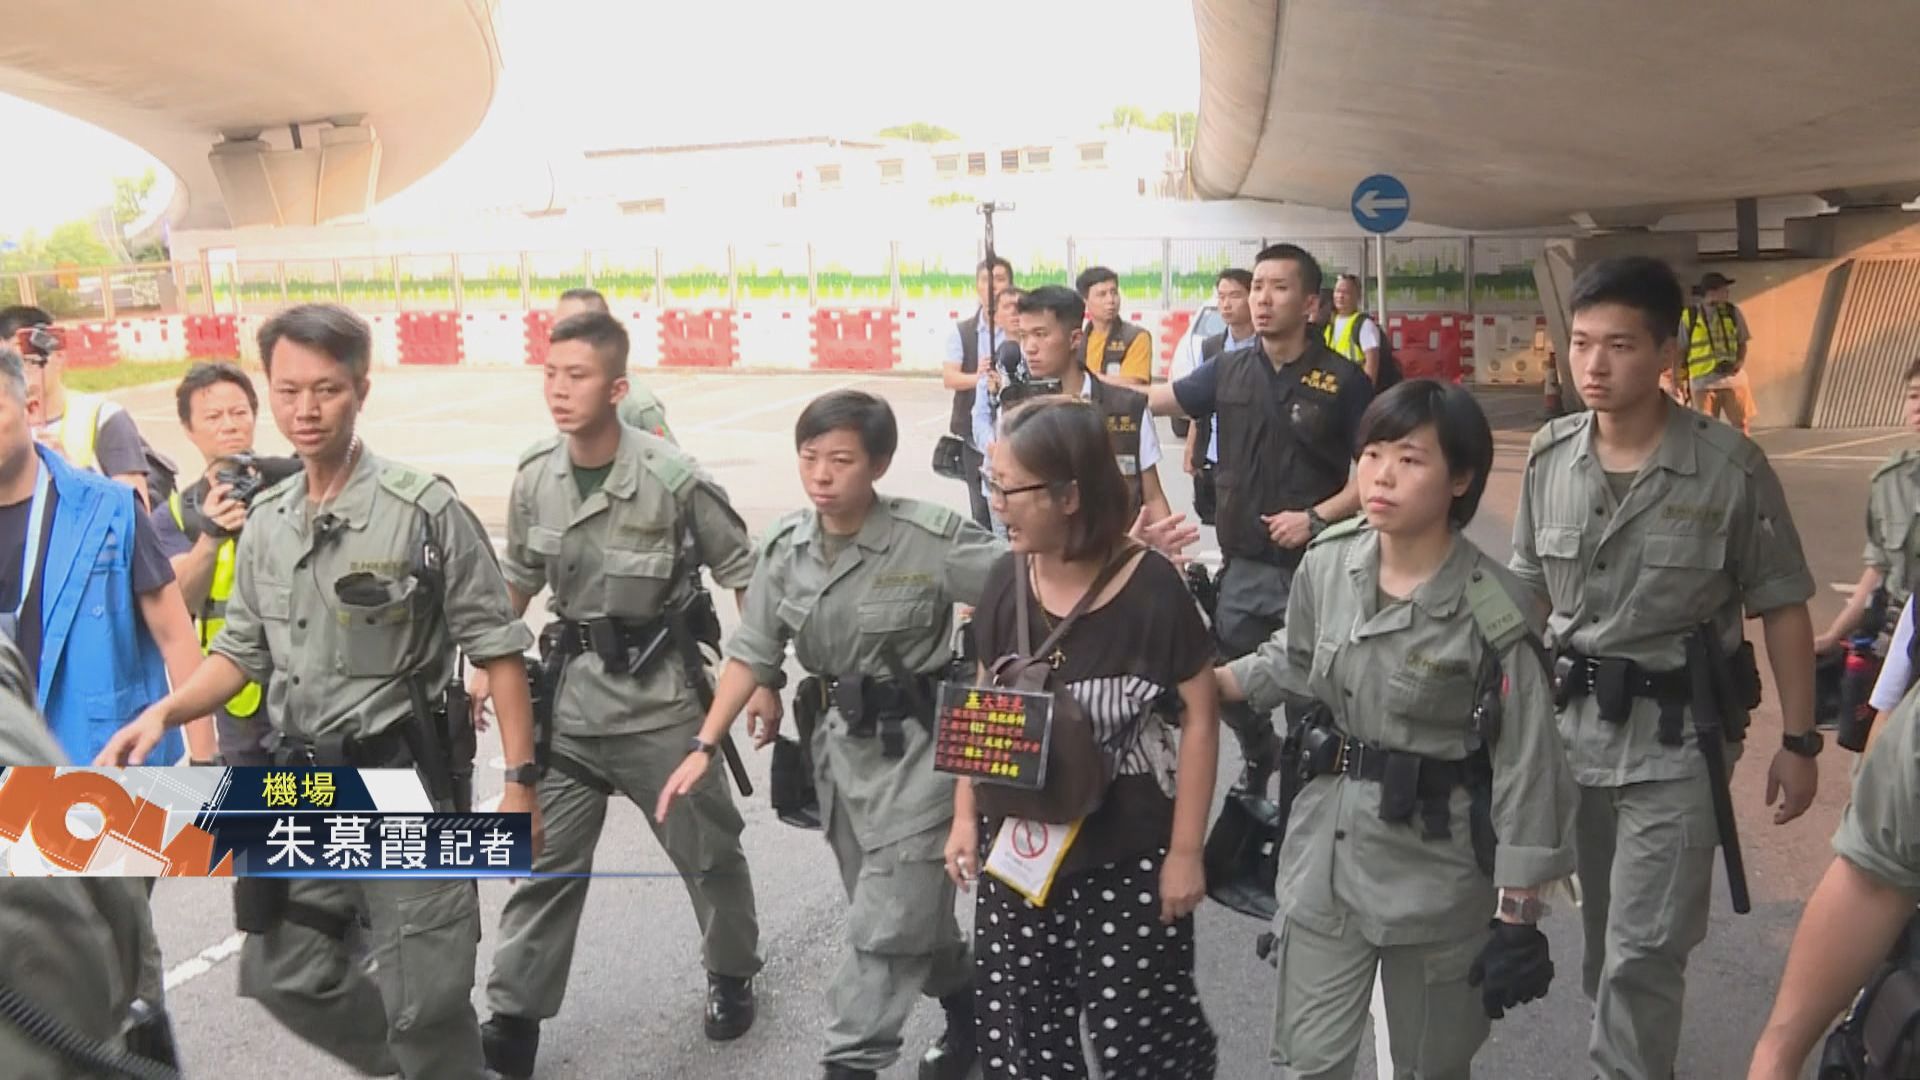 【現場報道】防暴警察驅散東涌站聚集市民